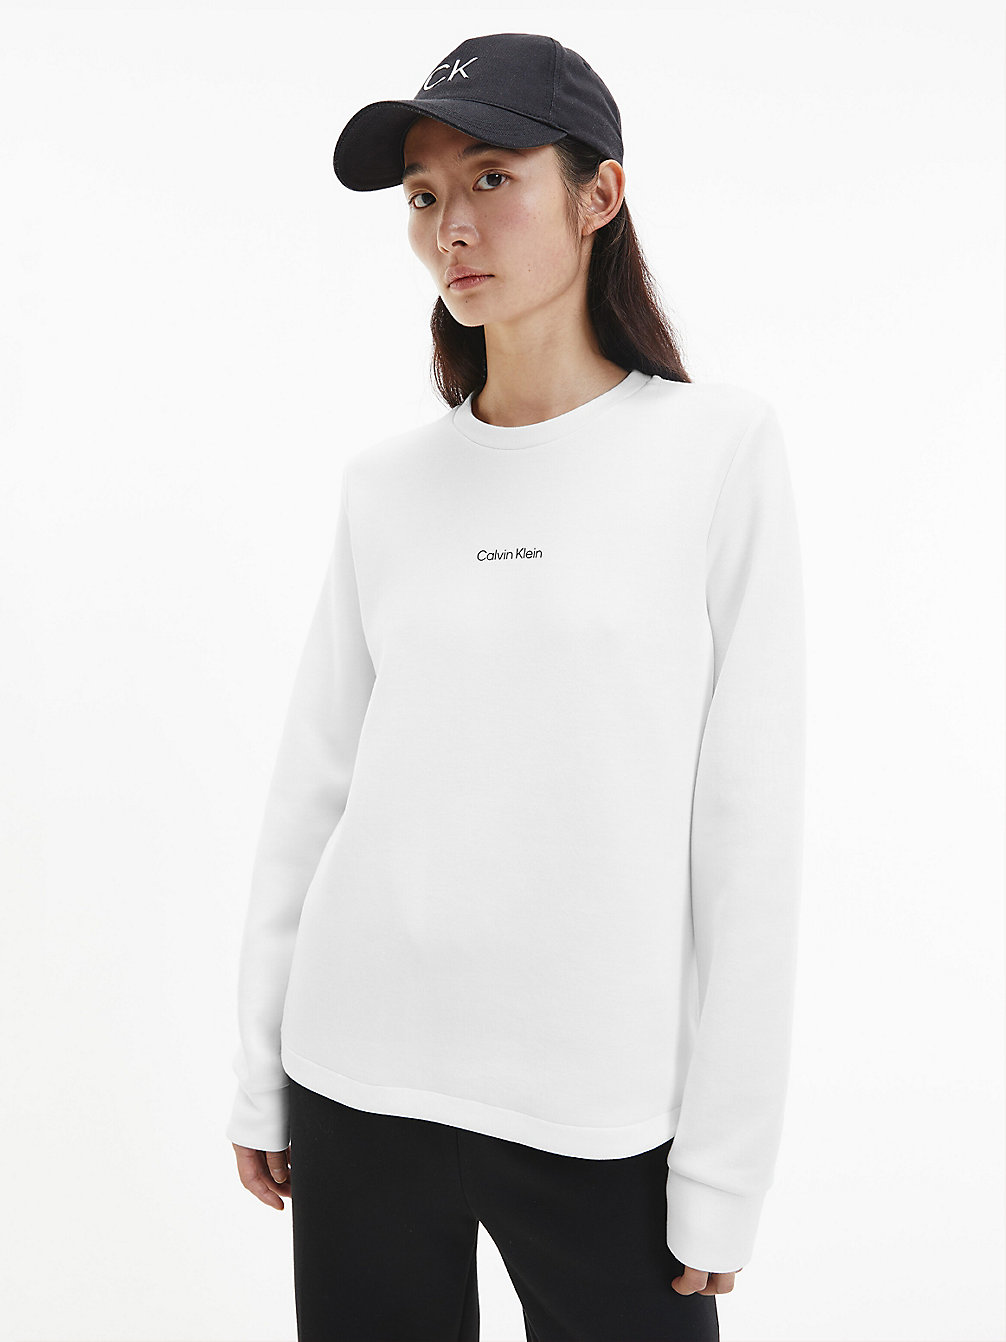 BRIGHT WHITE Sweatshirt Aus Bio-Baumwolle undefined Damen Calvin Klein